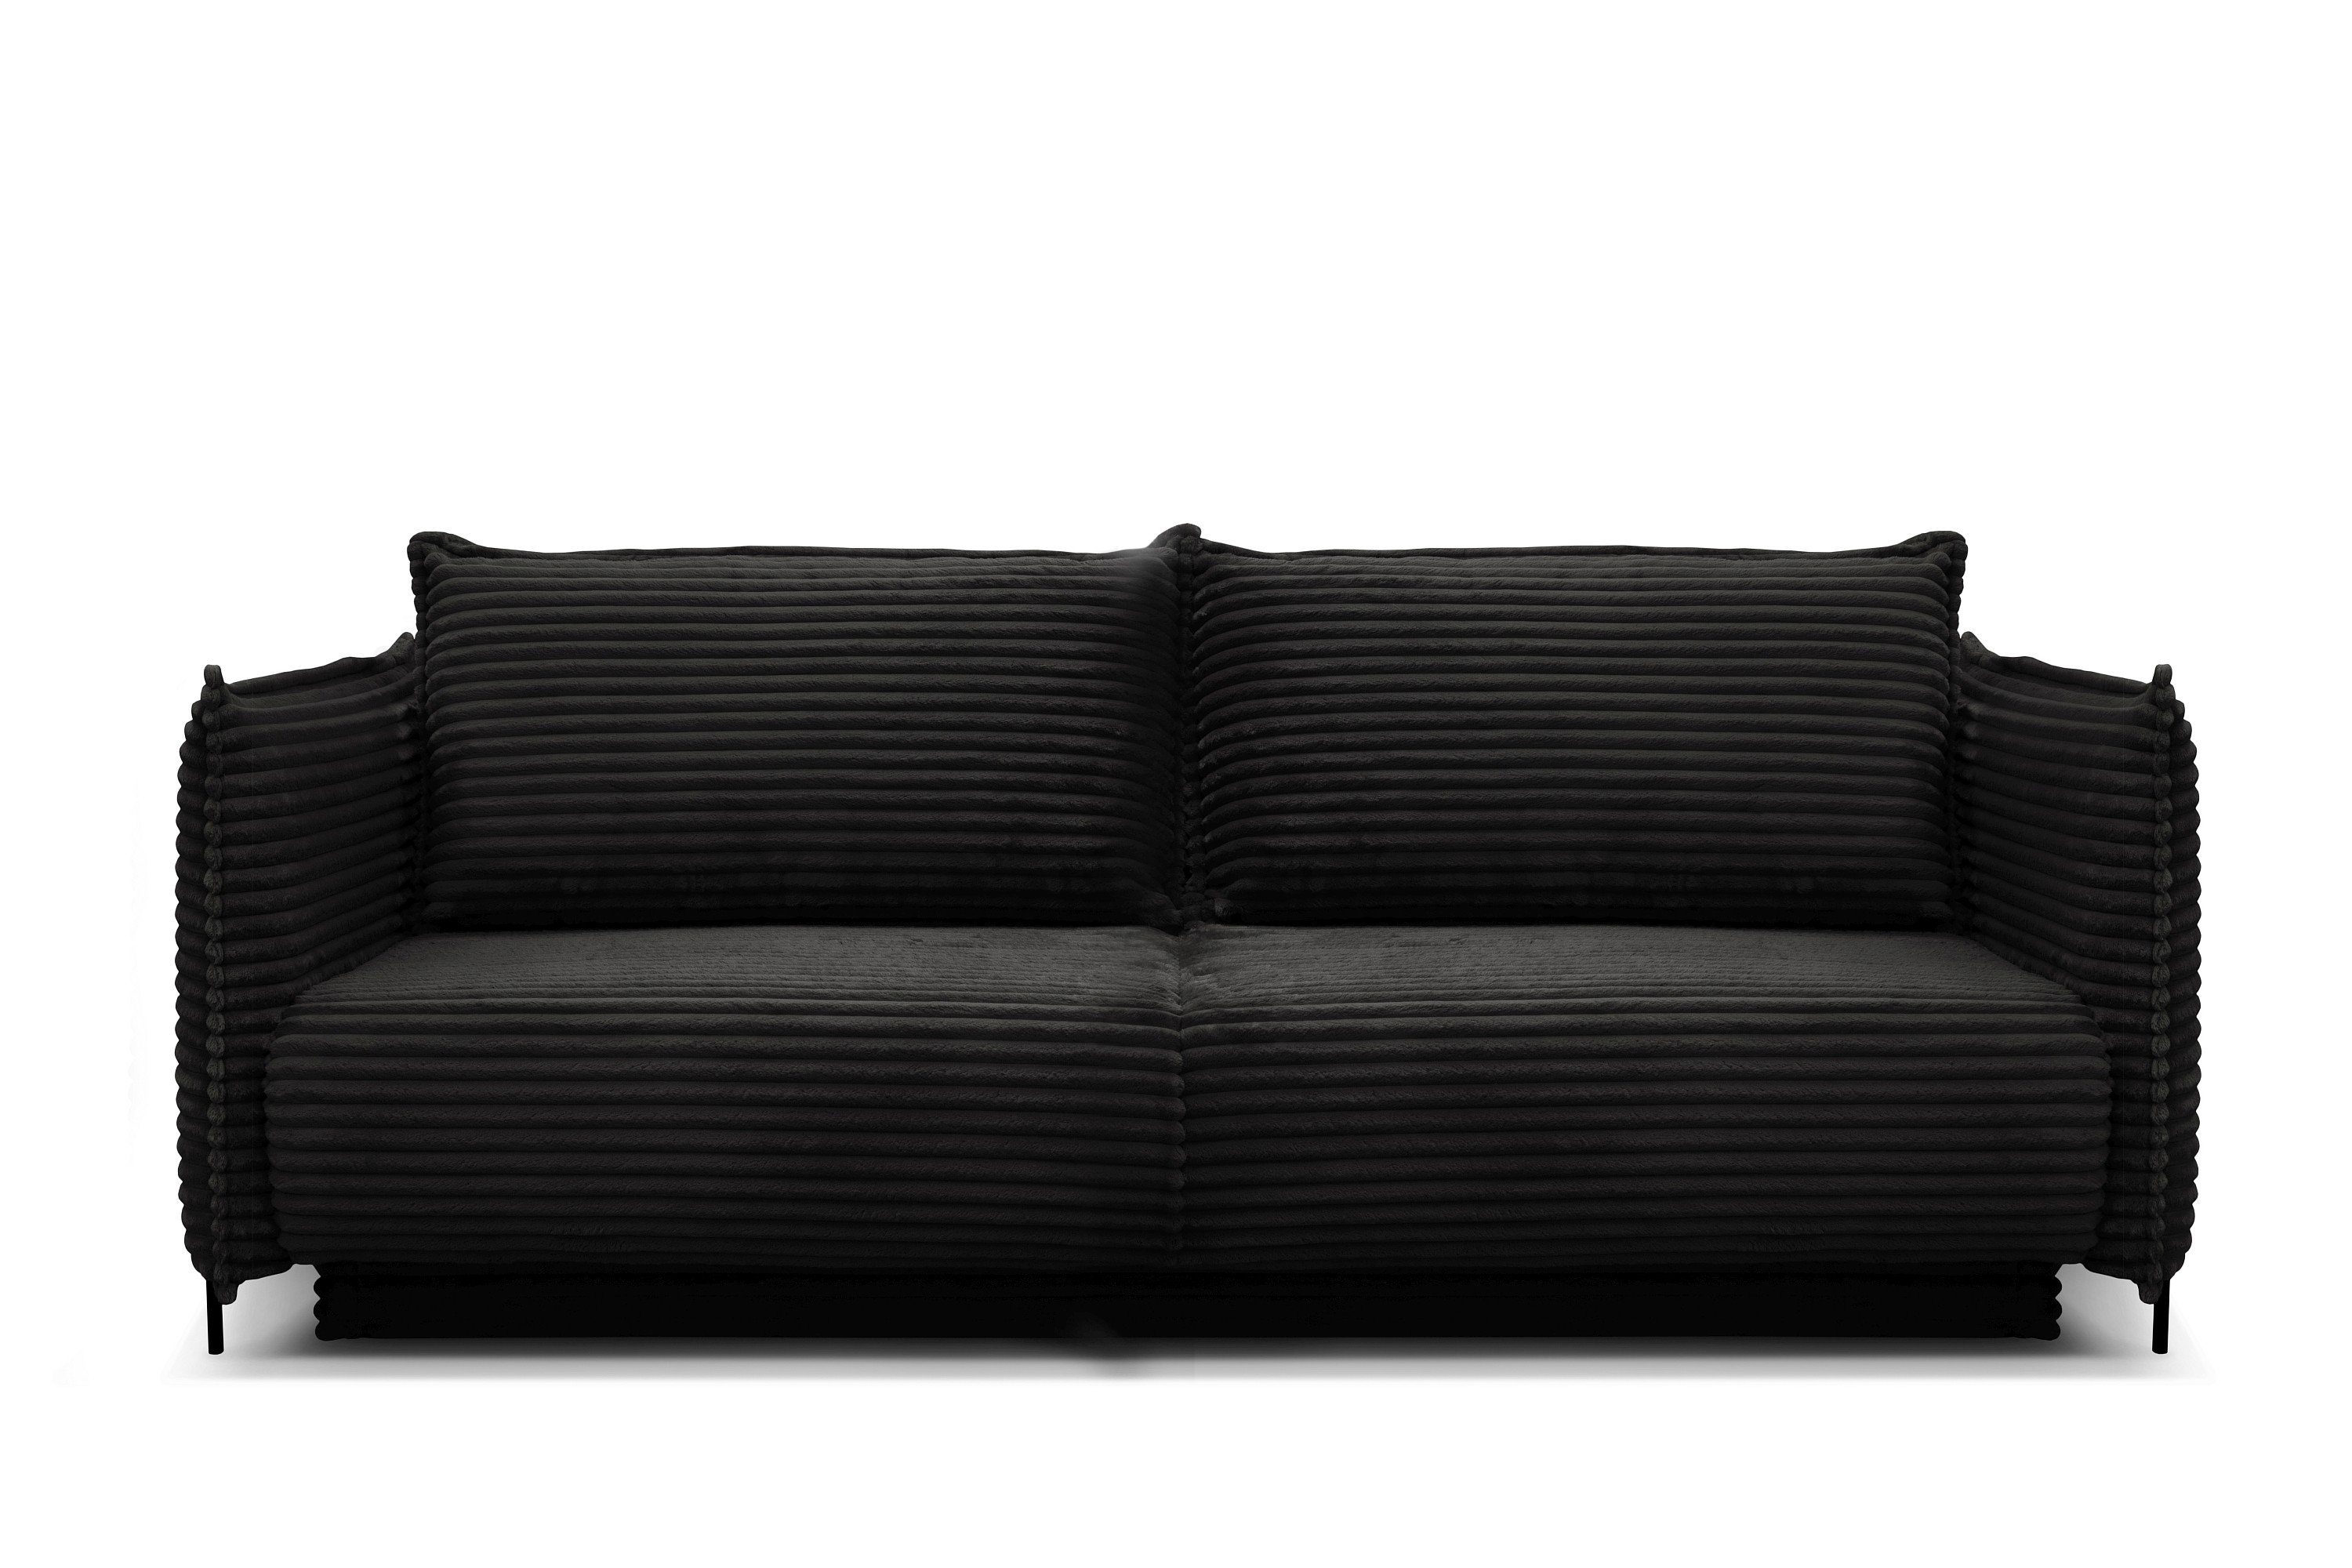 Möbel für Dich Sofa Bettsofa Amalfi mit Cord bezogen sowie mit Bettkasten und Farbauswahl, Cordbezug mega-1-black | Alle Sofas